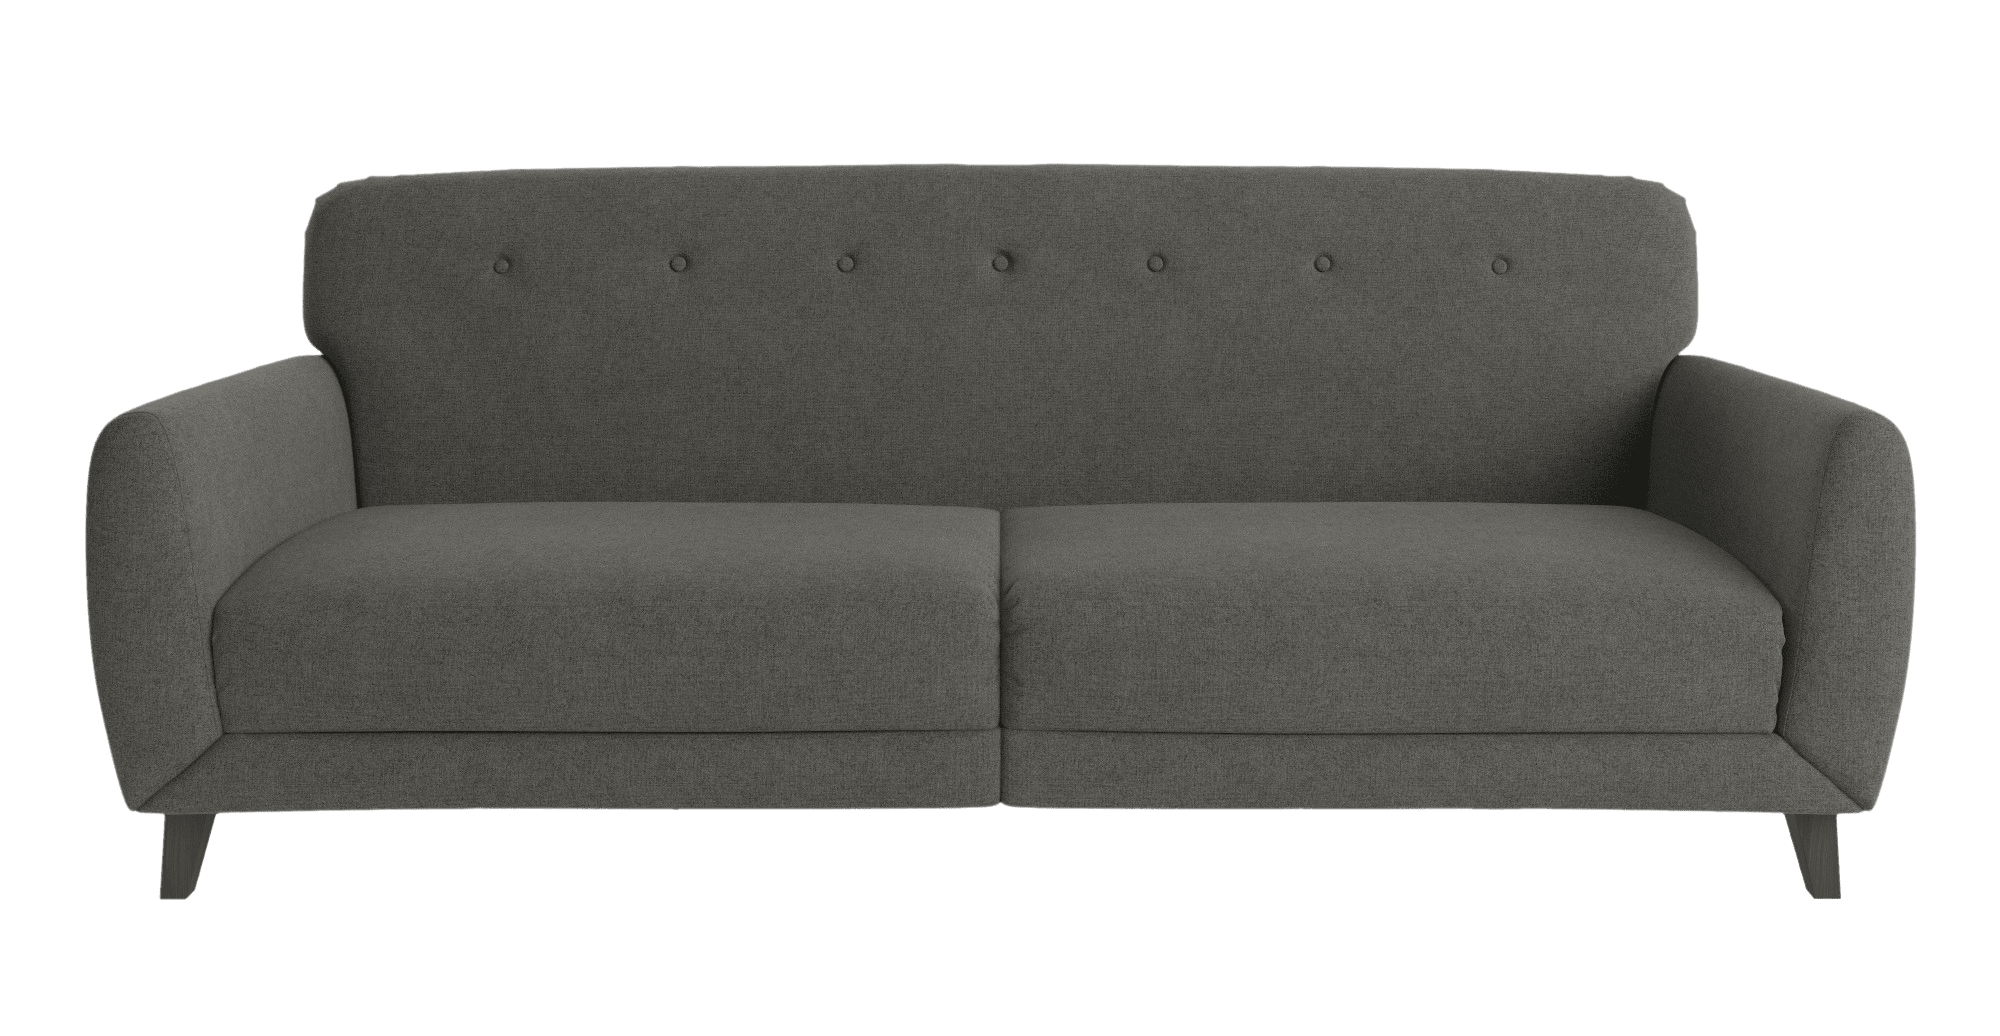 Black Sofa PNG Image